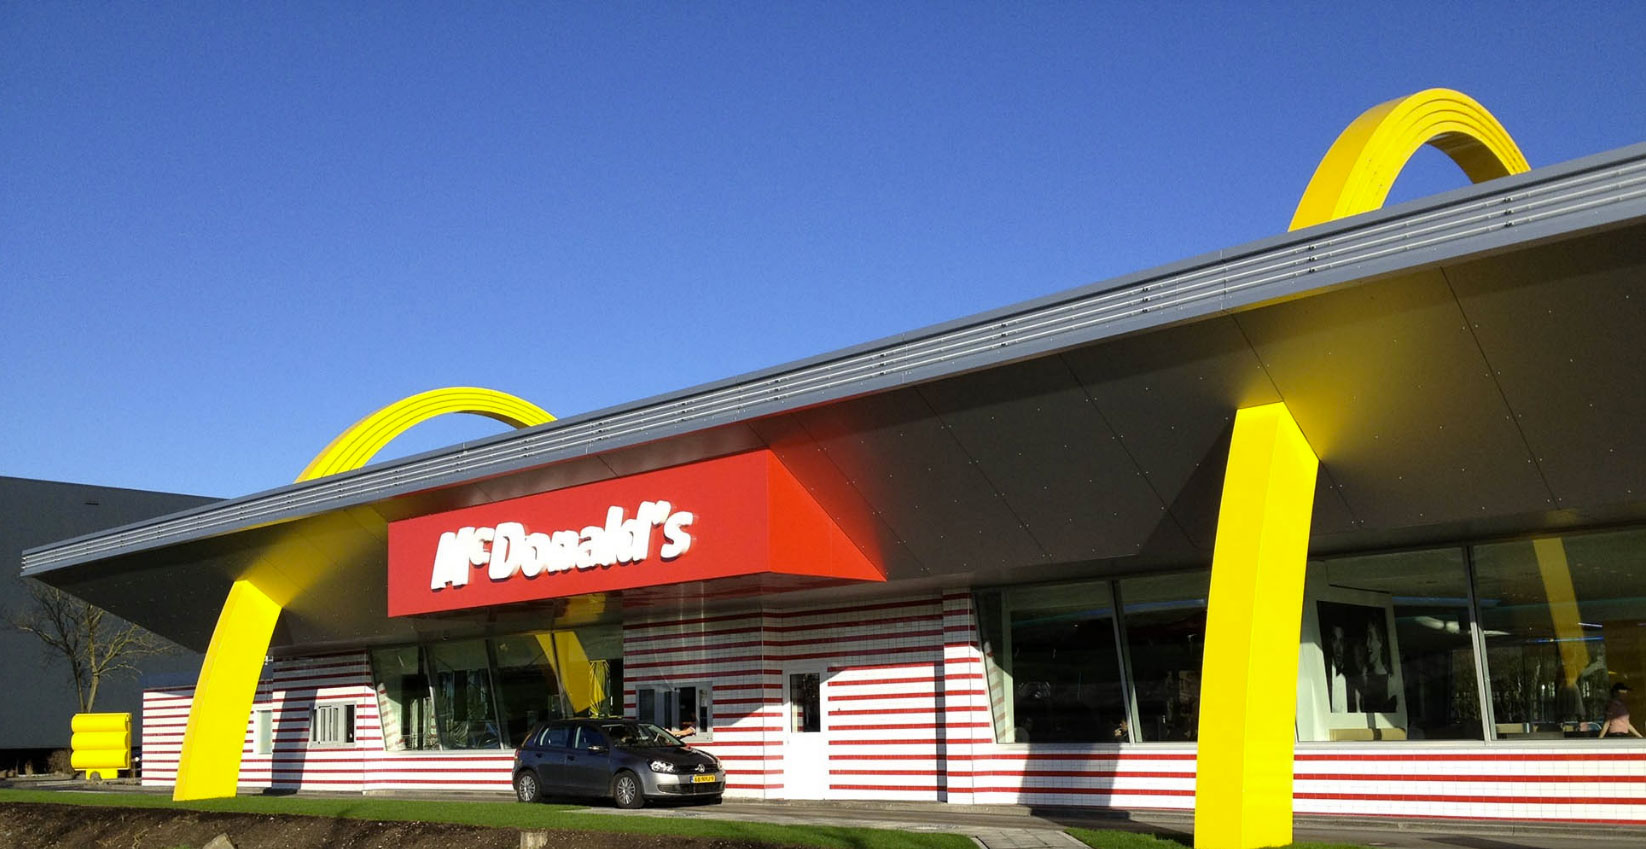 McDonalds Best, Netherlands, BRTArchitecten, Alucobond Silver Metallic